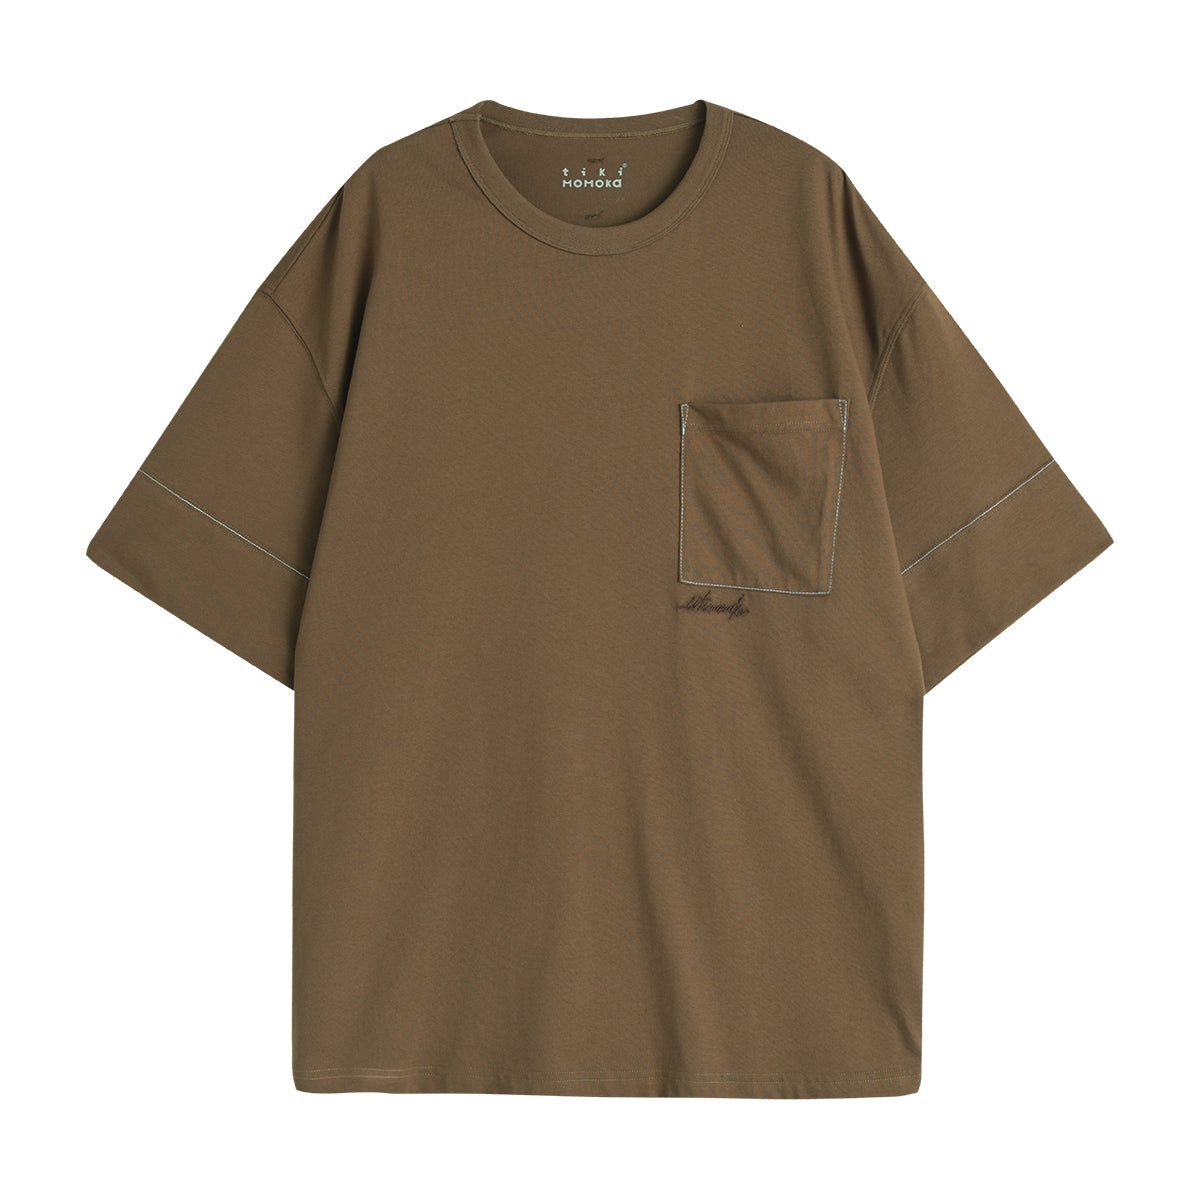 TIKIMOMOKA レター刺繍ポケットTシャツ TKM020